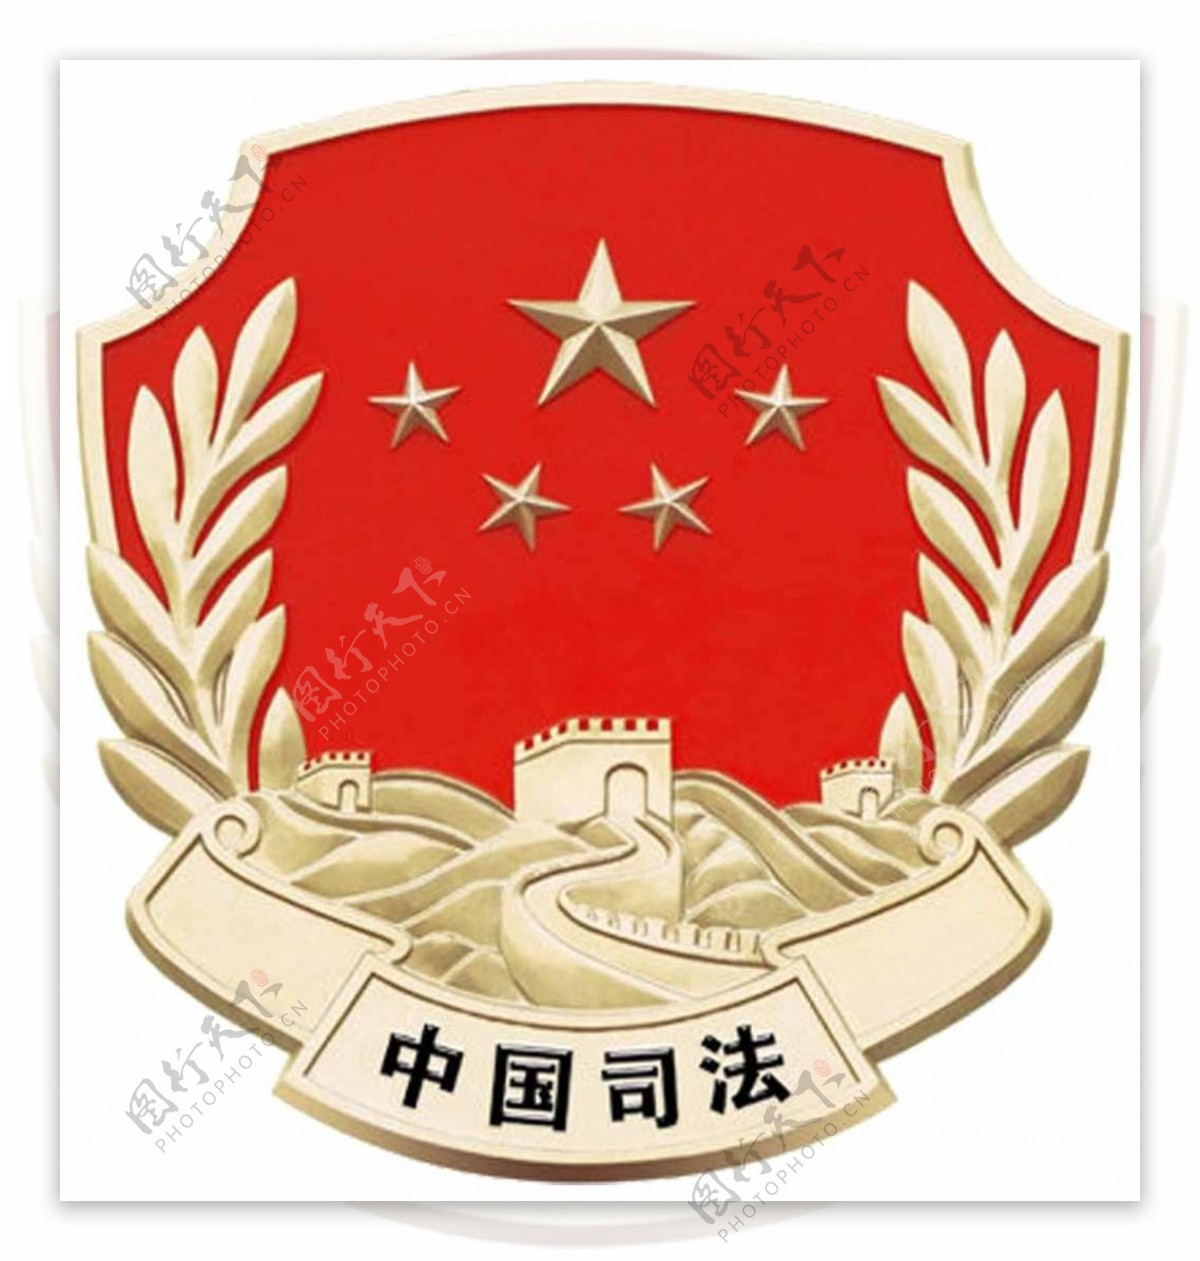 中国司法徽标志